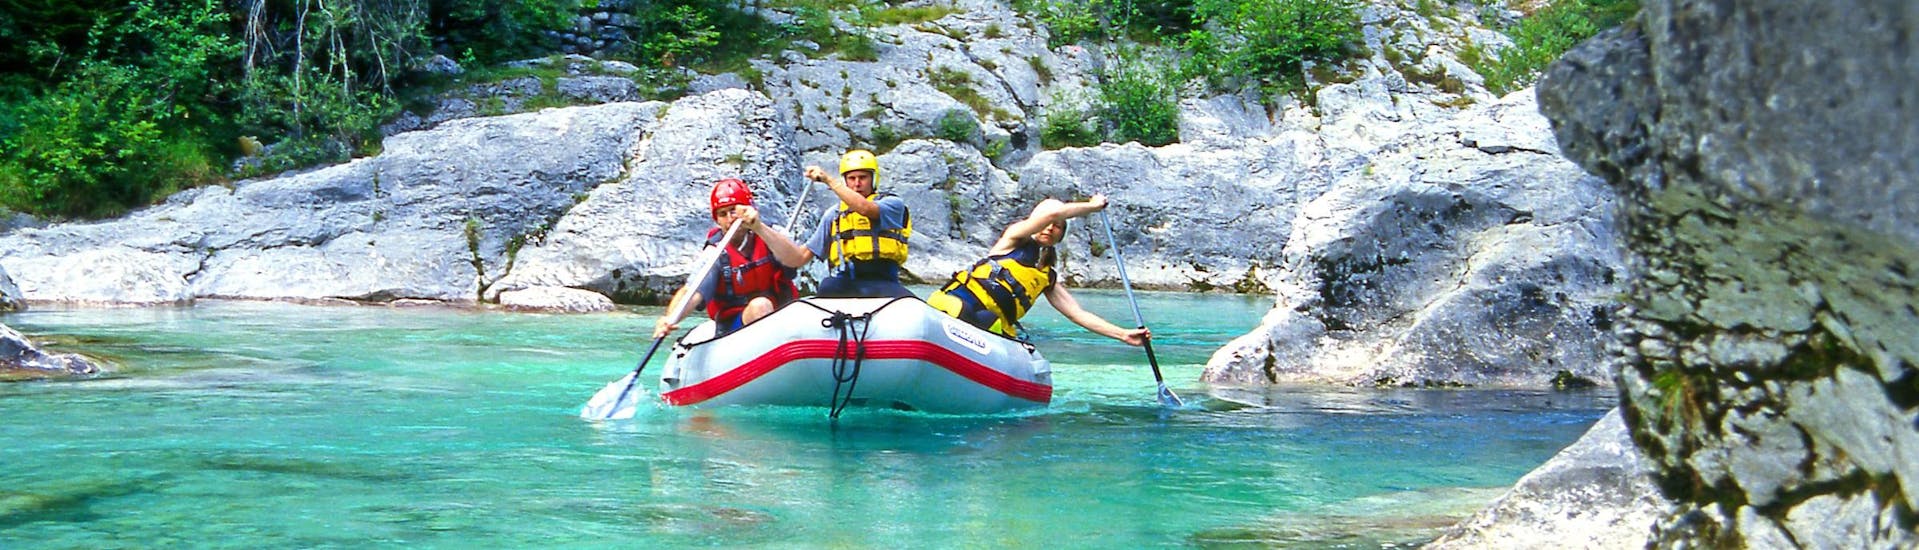 Un grupo de jóvenes disfruta haciendo rafting en Učja Valley, popular destino para los deportes de agua y de aventura como el rafting y el descenso de barrancos.  